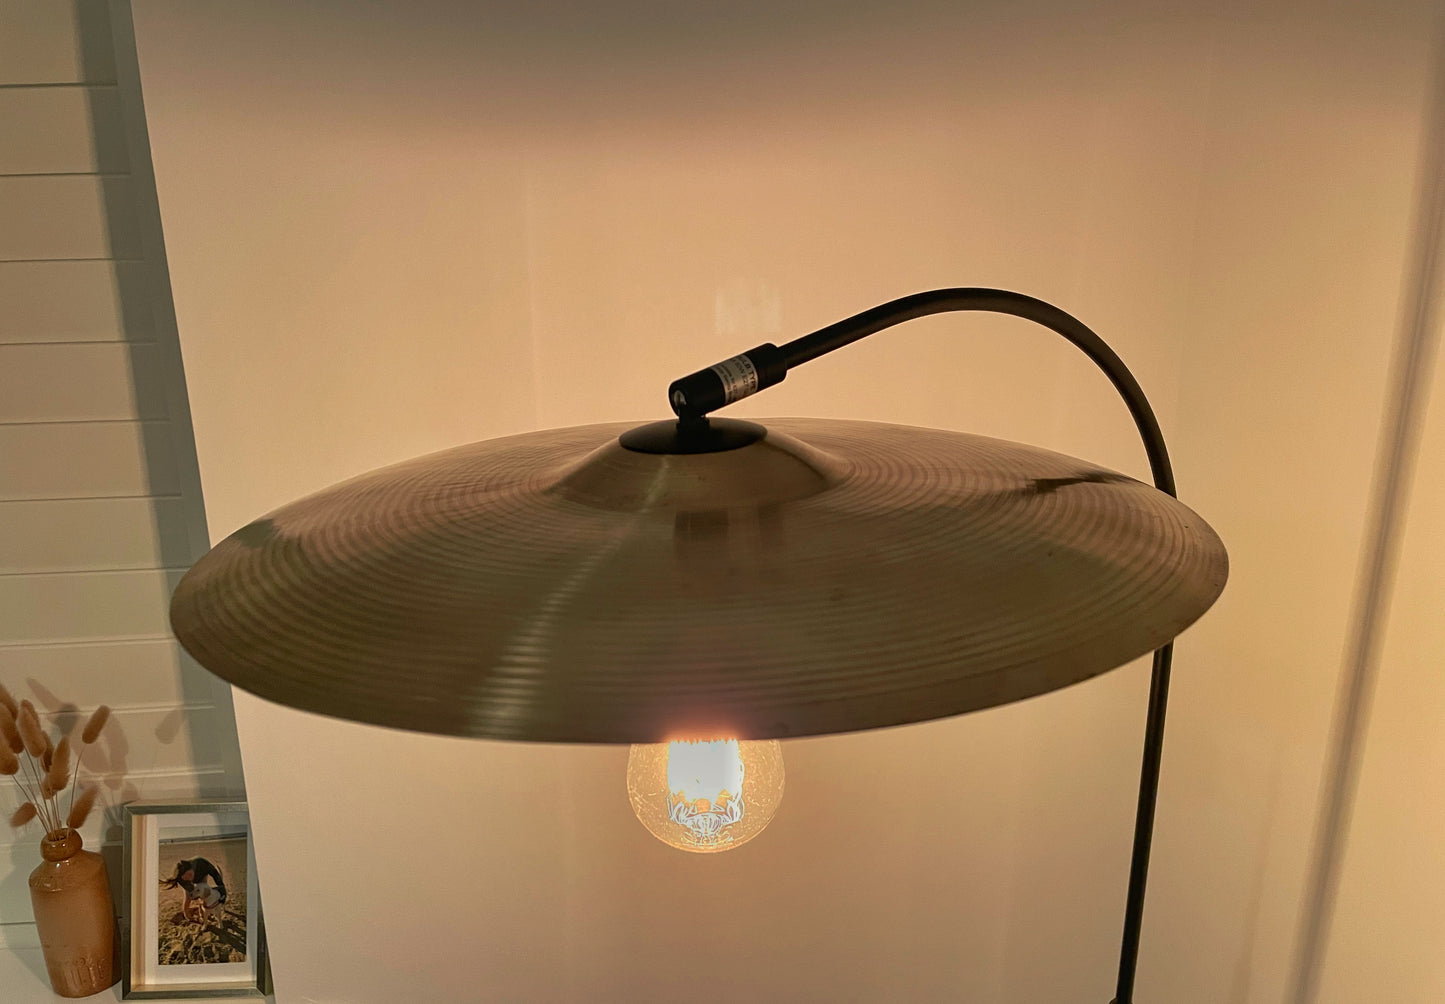 Cymbal Floor Lamp / Drum Lamp / Drum Cymbal Lamp / Matt Black Lamp / Drum Upcycle